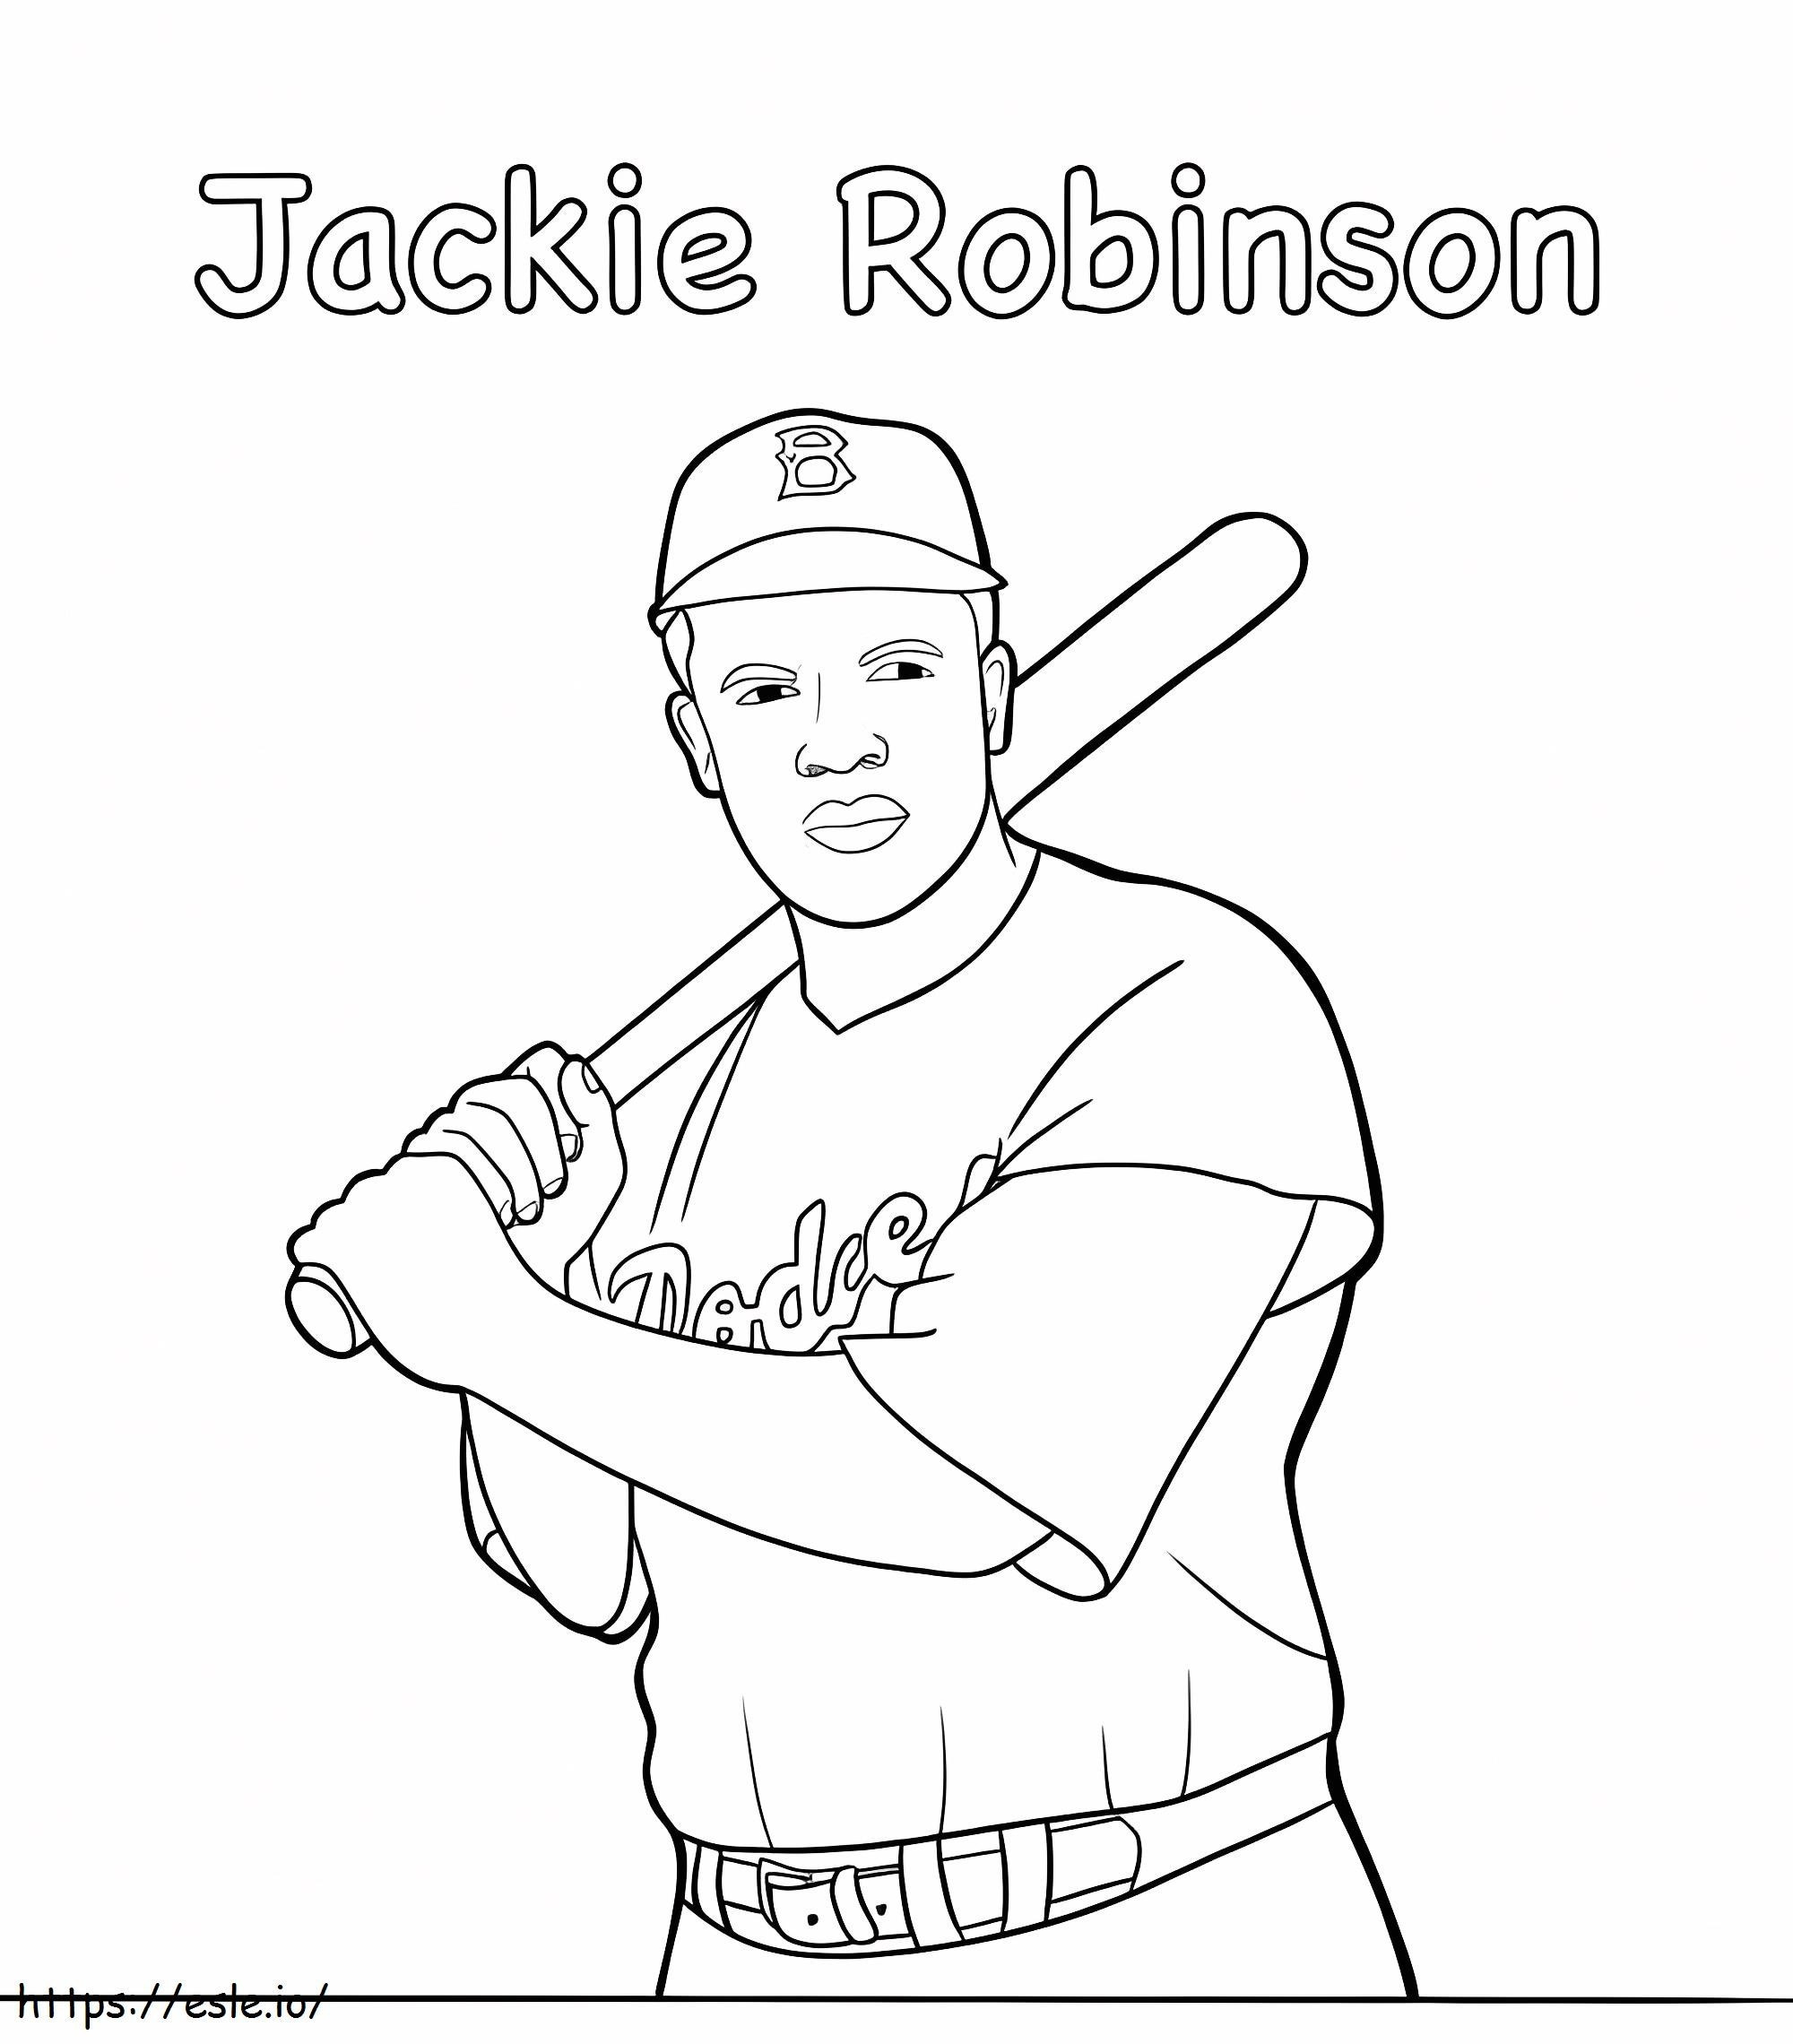 Jackie Robinson 9 de colorat